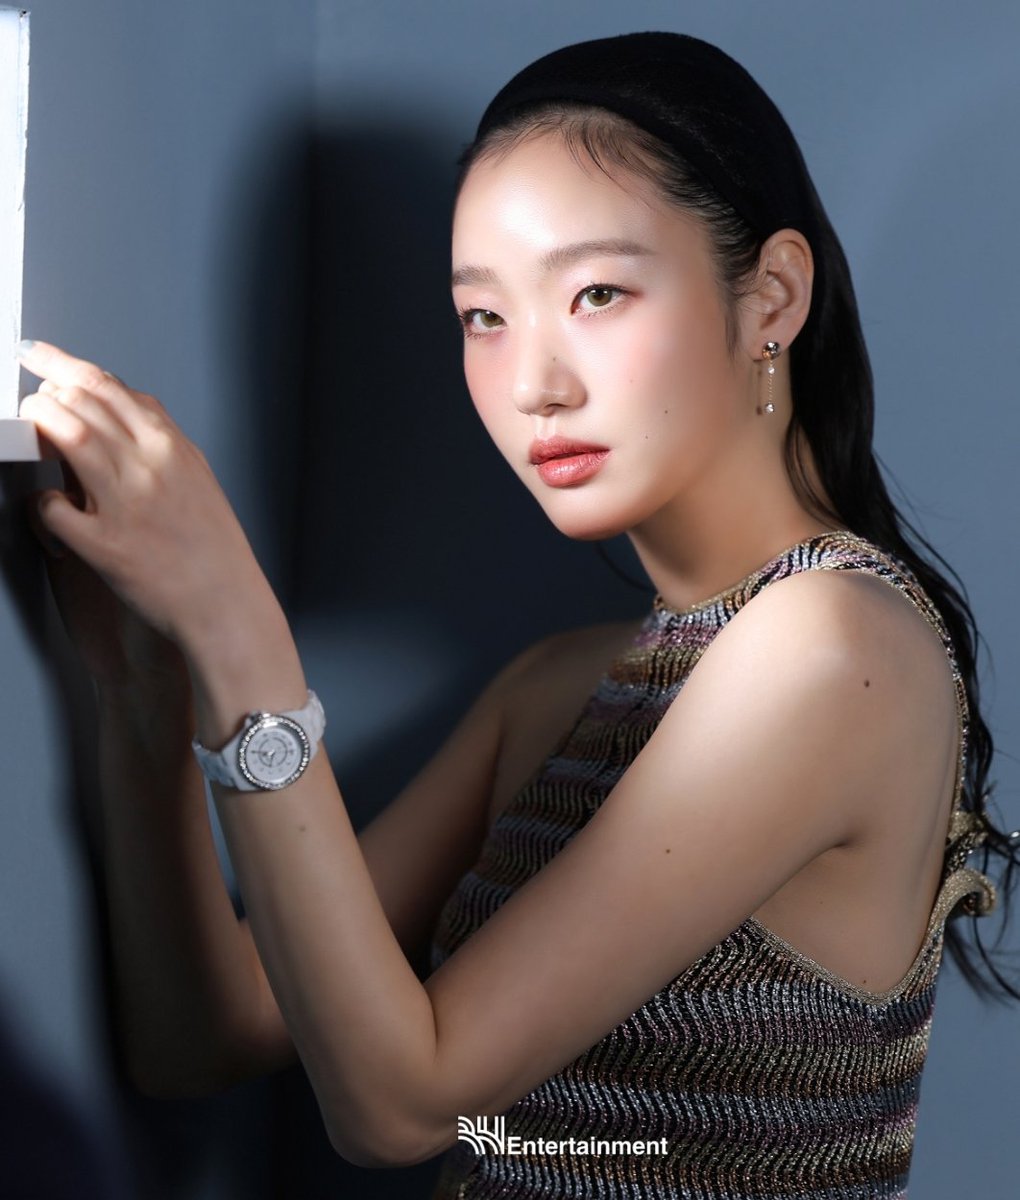 Это потрясающе 😍😍😍😍😍
Новая история от #KimGoEun в фотосессии #Chanel

Каждая фотосессия это новая история и новая #김고은 ❤️❤️❤️

#Exhuma #Pamyo 🔥🔥🔥

m.post.naver.com/viewer/postVie…